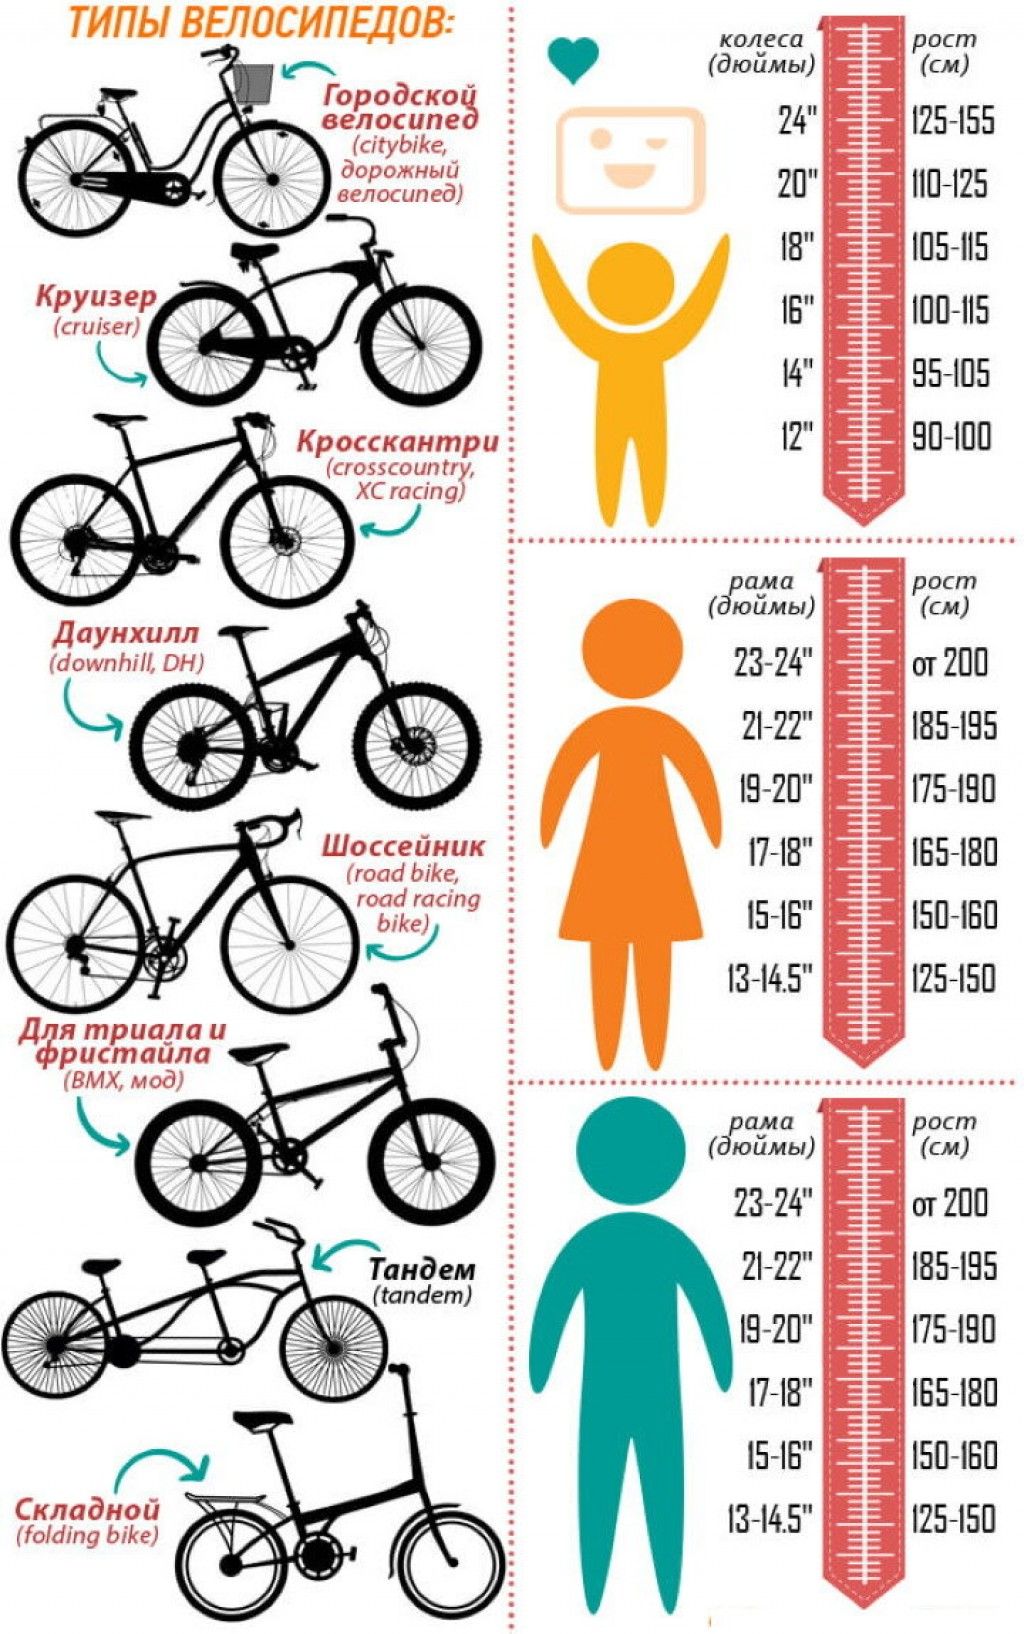 Как подобрать размер рамы. Как подобрать размер рамы велосипеда по росту ребенка. Как выбрать размер рамы велосипеда по росту ребенка. Размер рамы и колес велосипеда по росту таблица для детей. Размер рамы у велосипеда с 26 колесами.